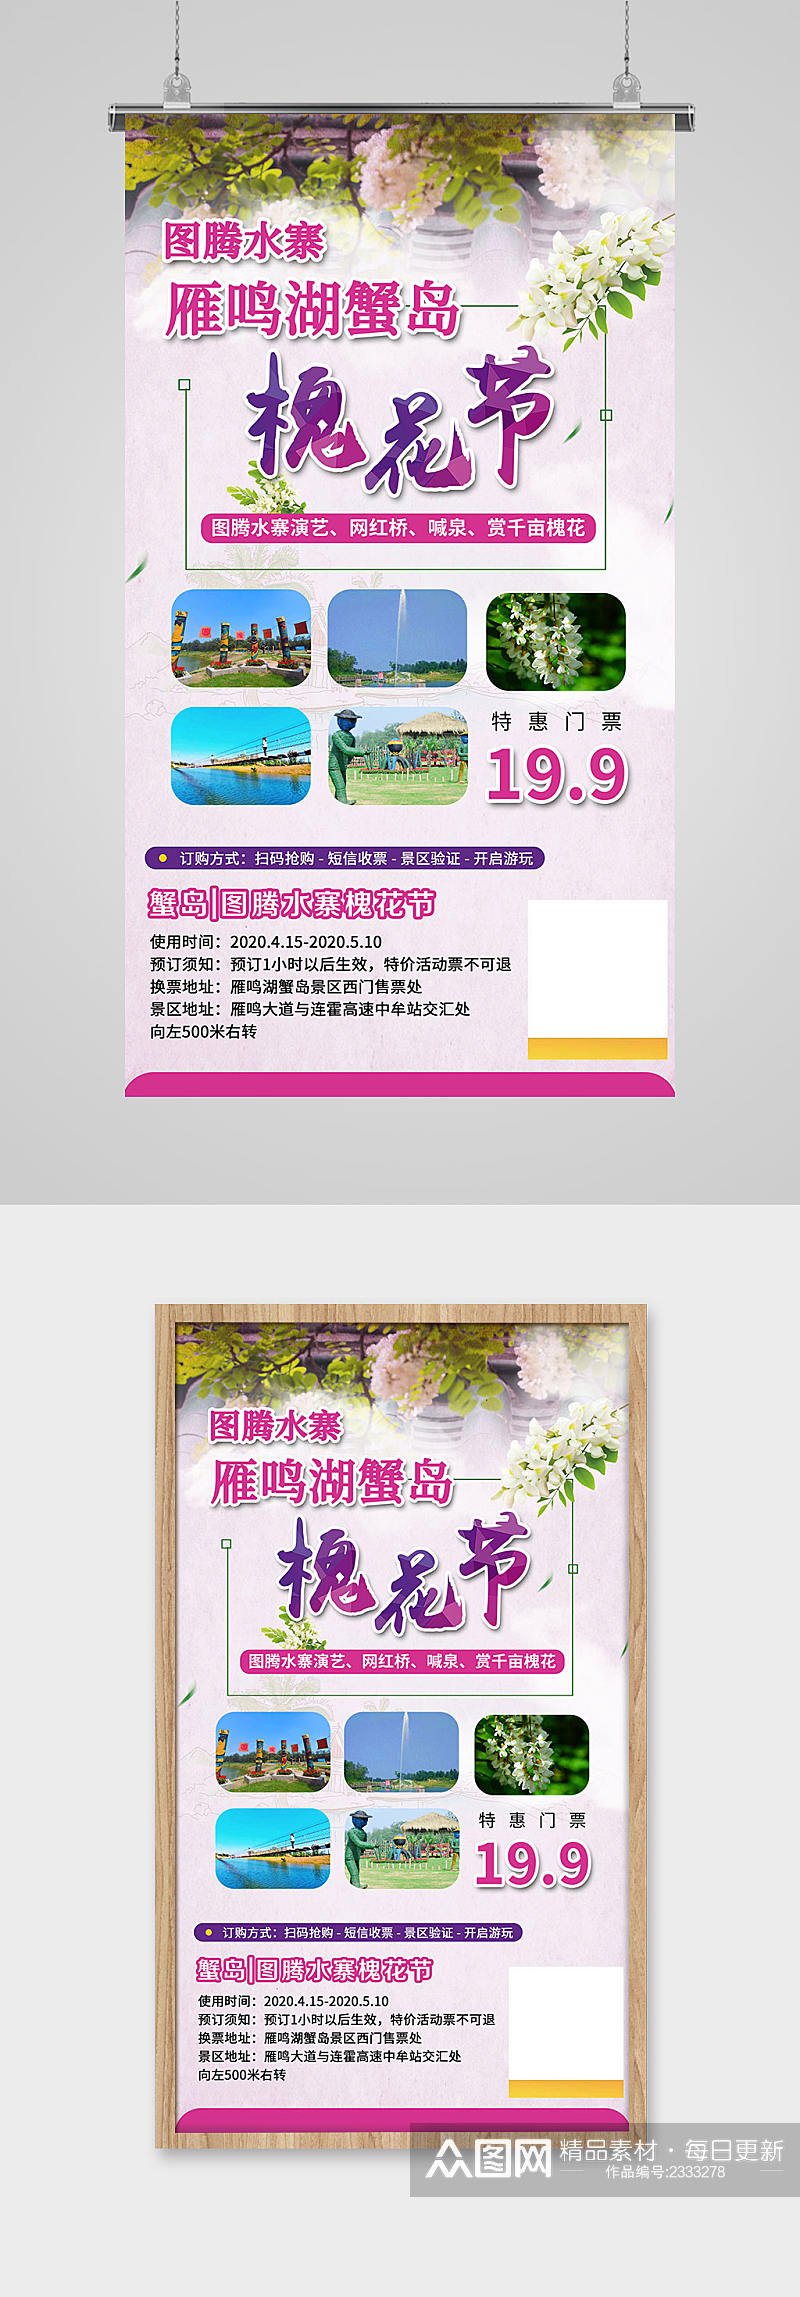 槐花节旅游宣传海报素材